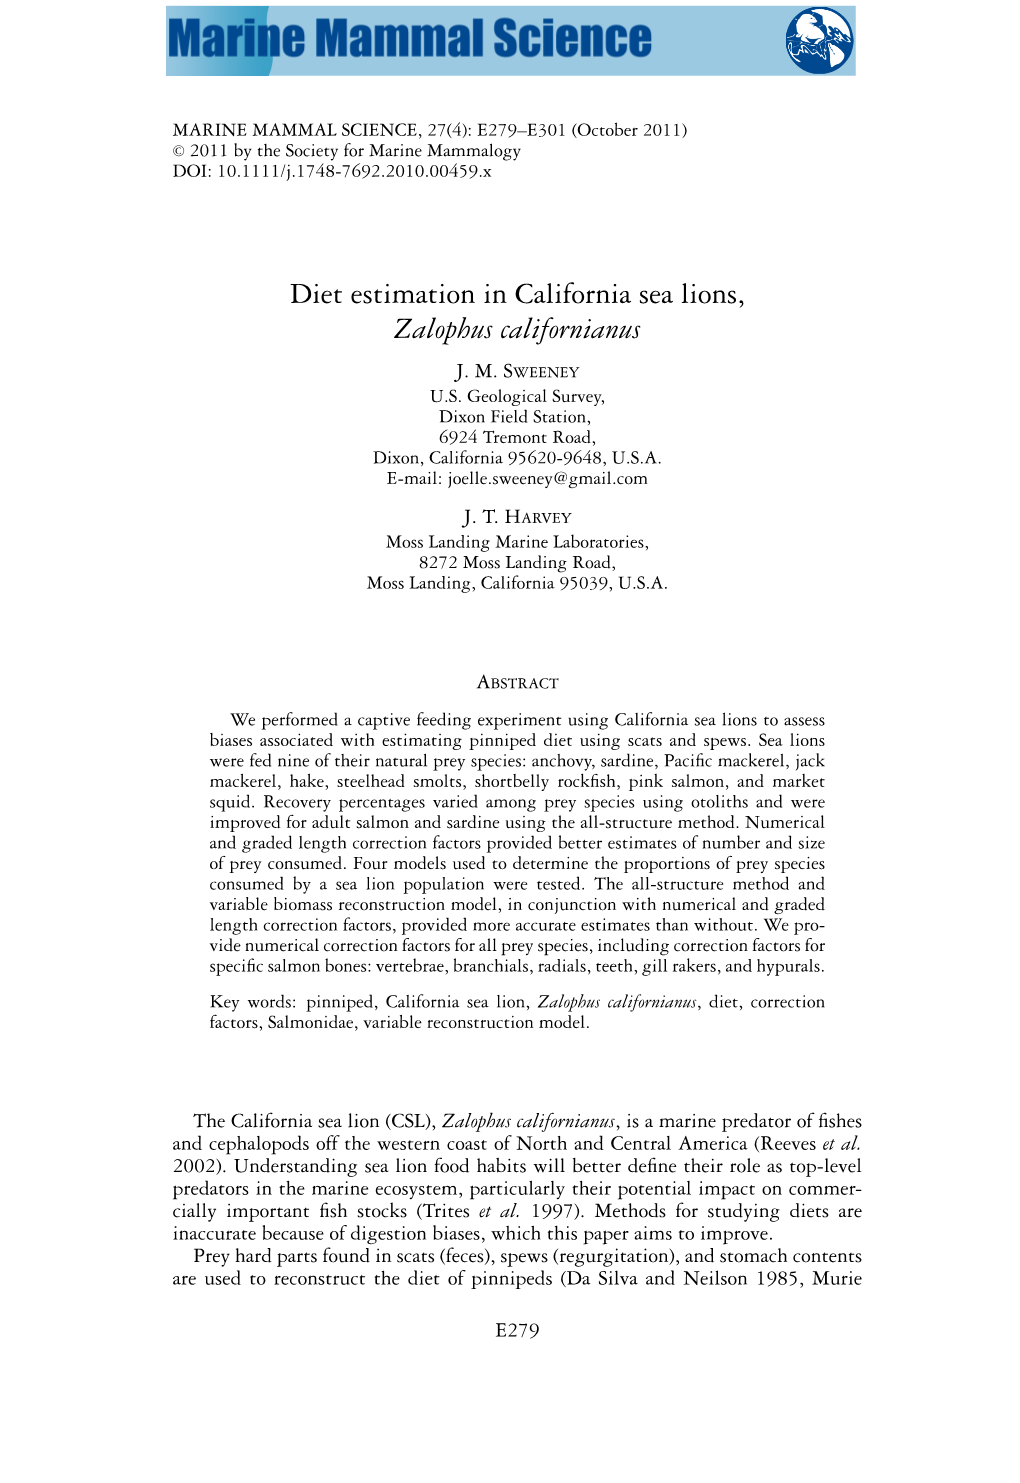 Diet Estimation in California Sea Lions, Zalophus Californianus